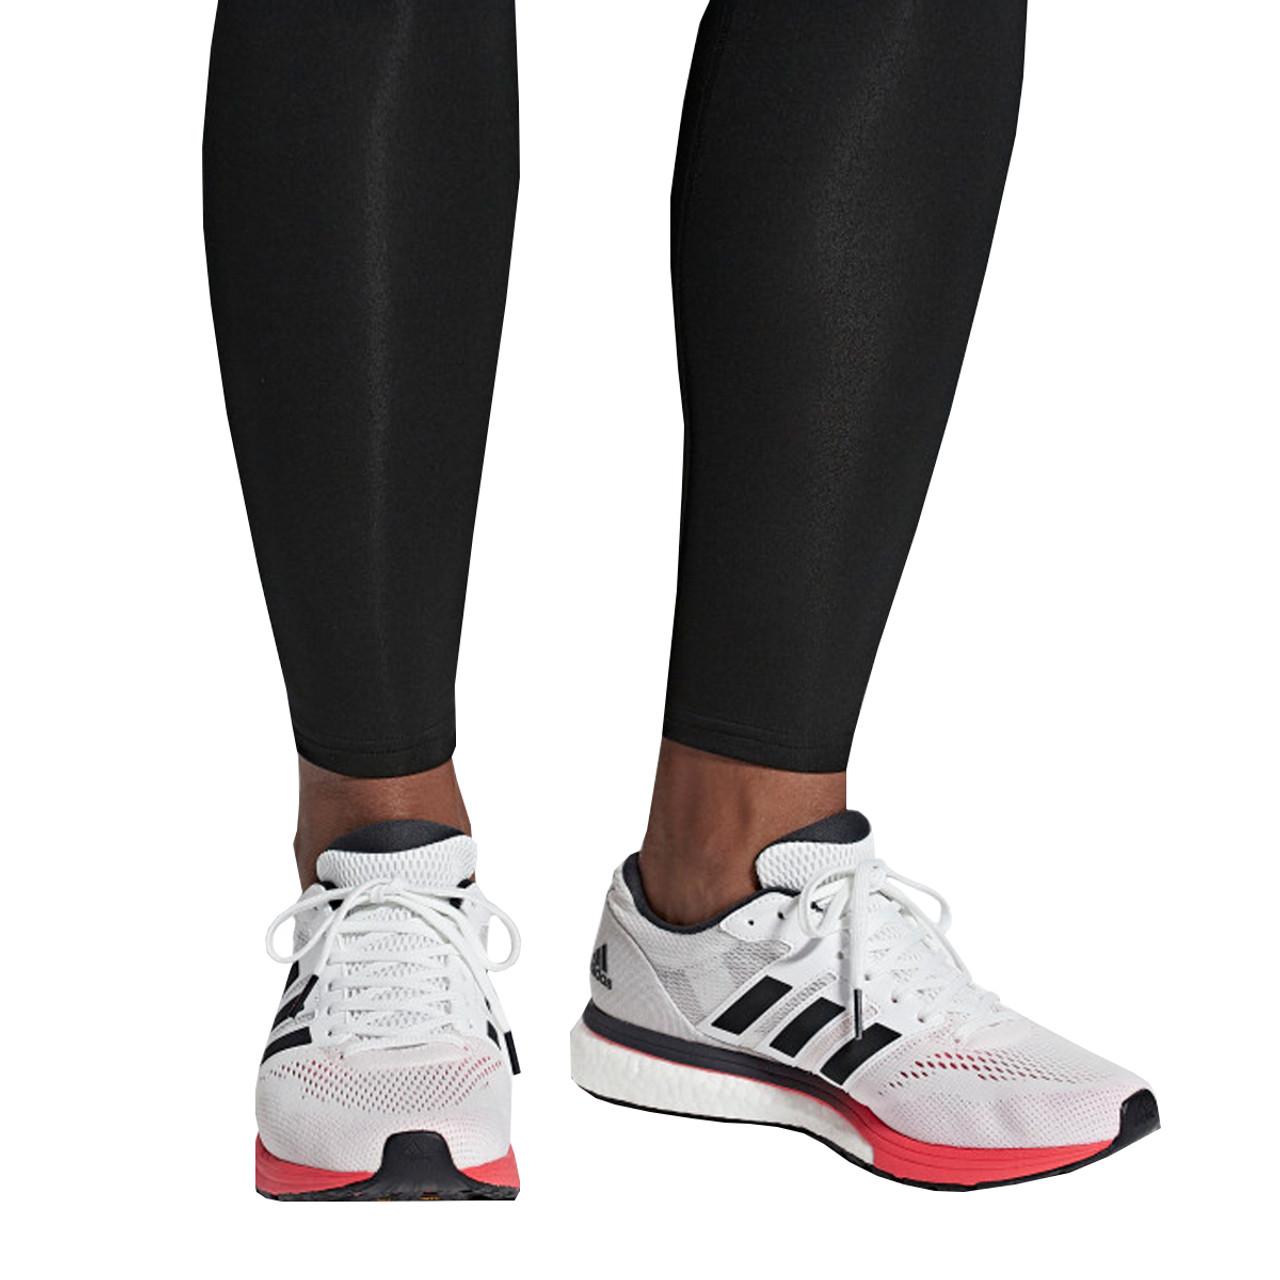 Adidas Adizero Boston 7 Men's Running Sneakers B37381 - White, Black, Red